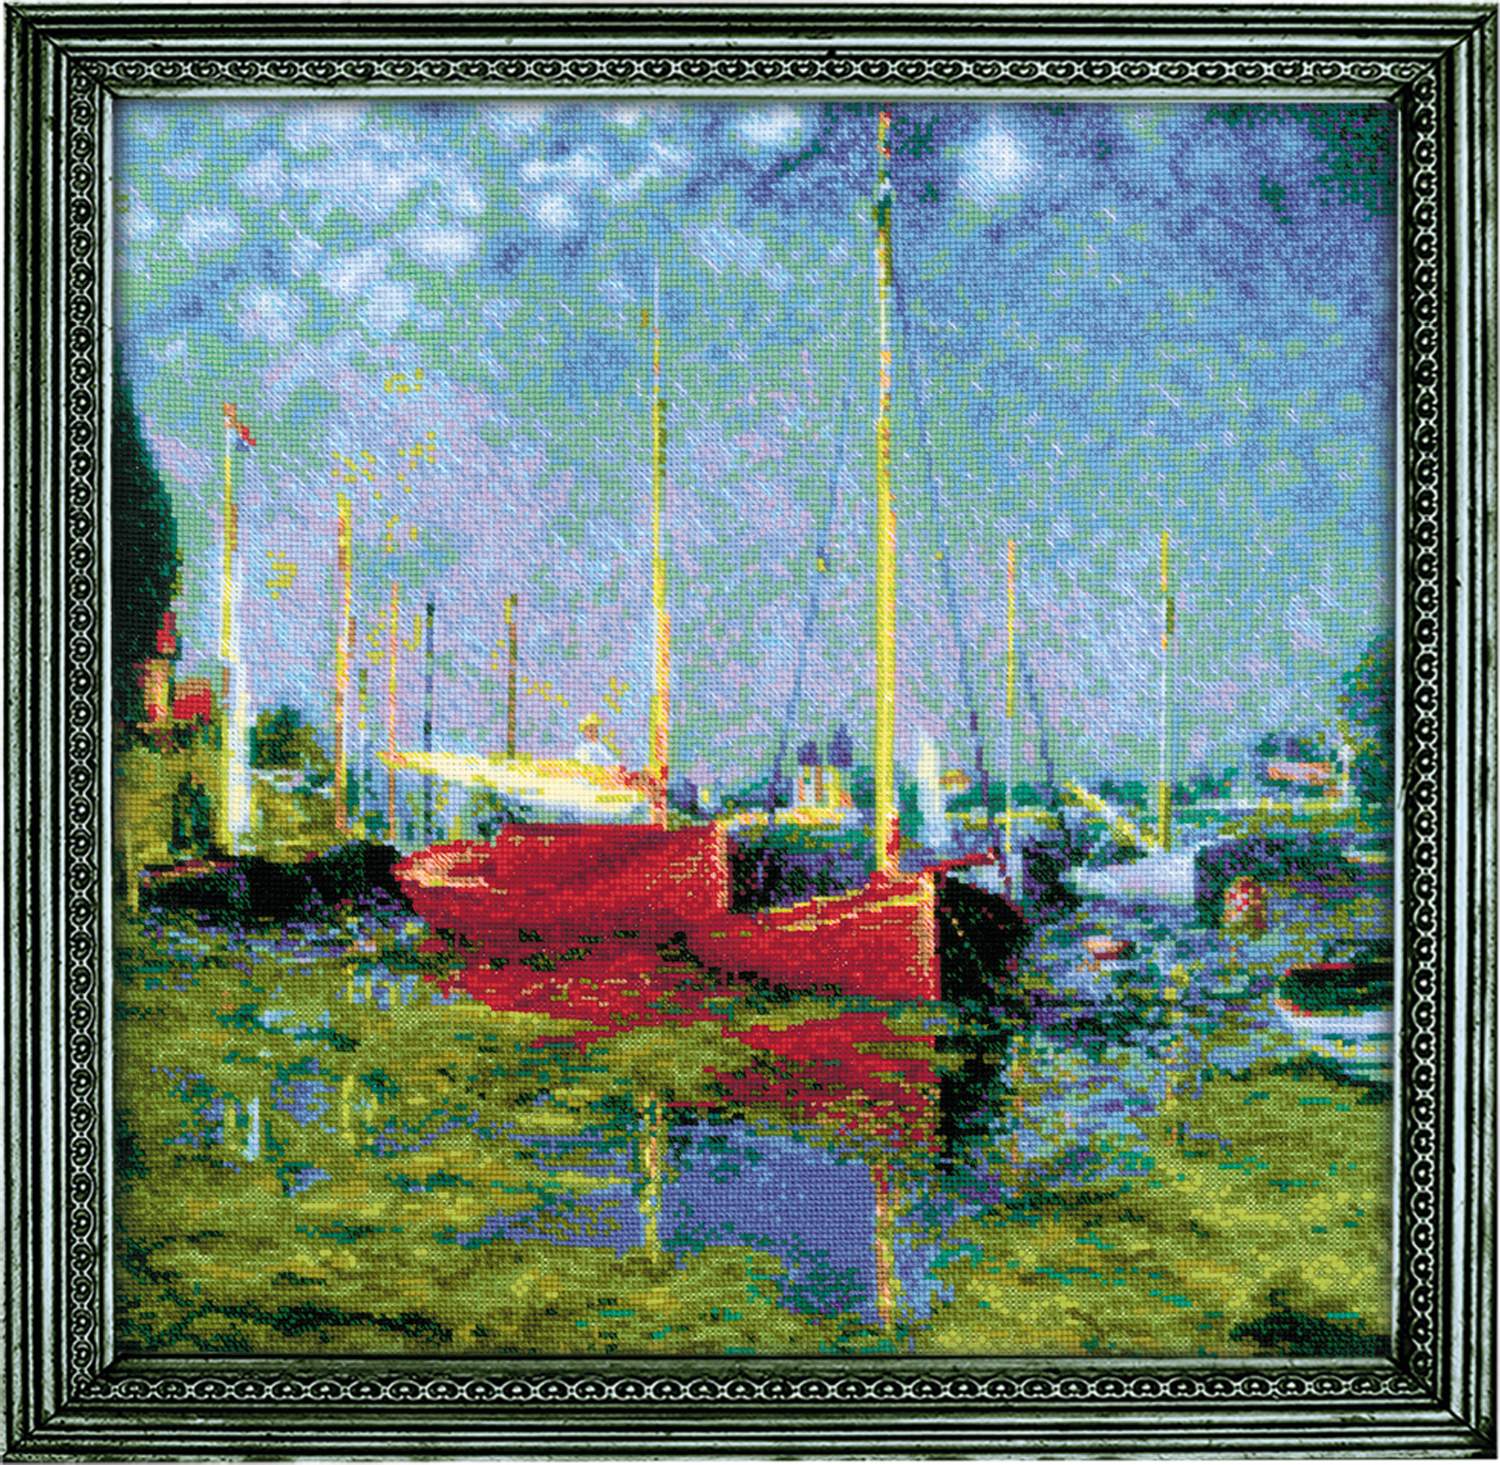 Argenteuil - Monet festménye alapján